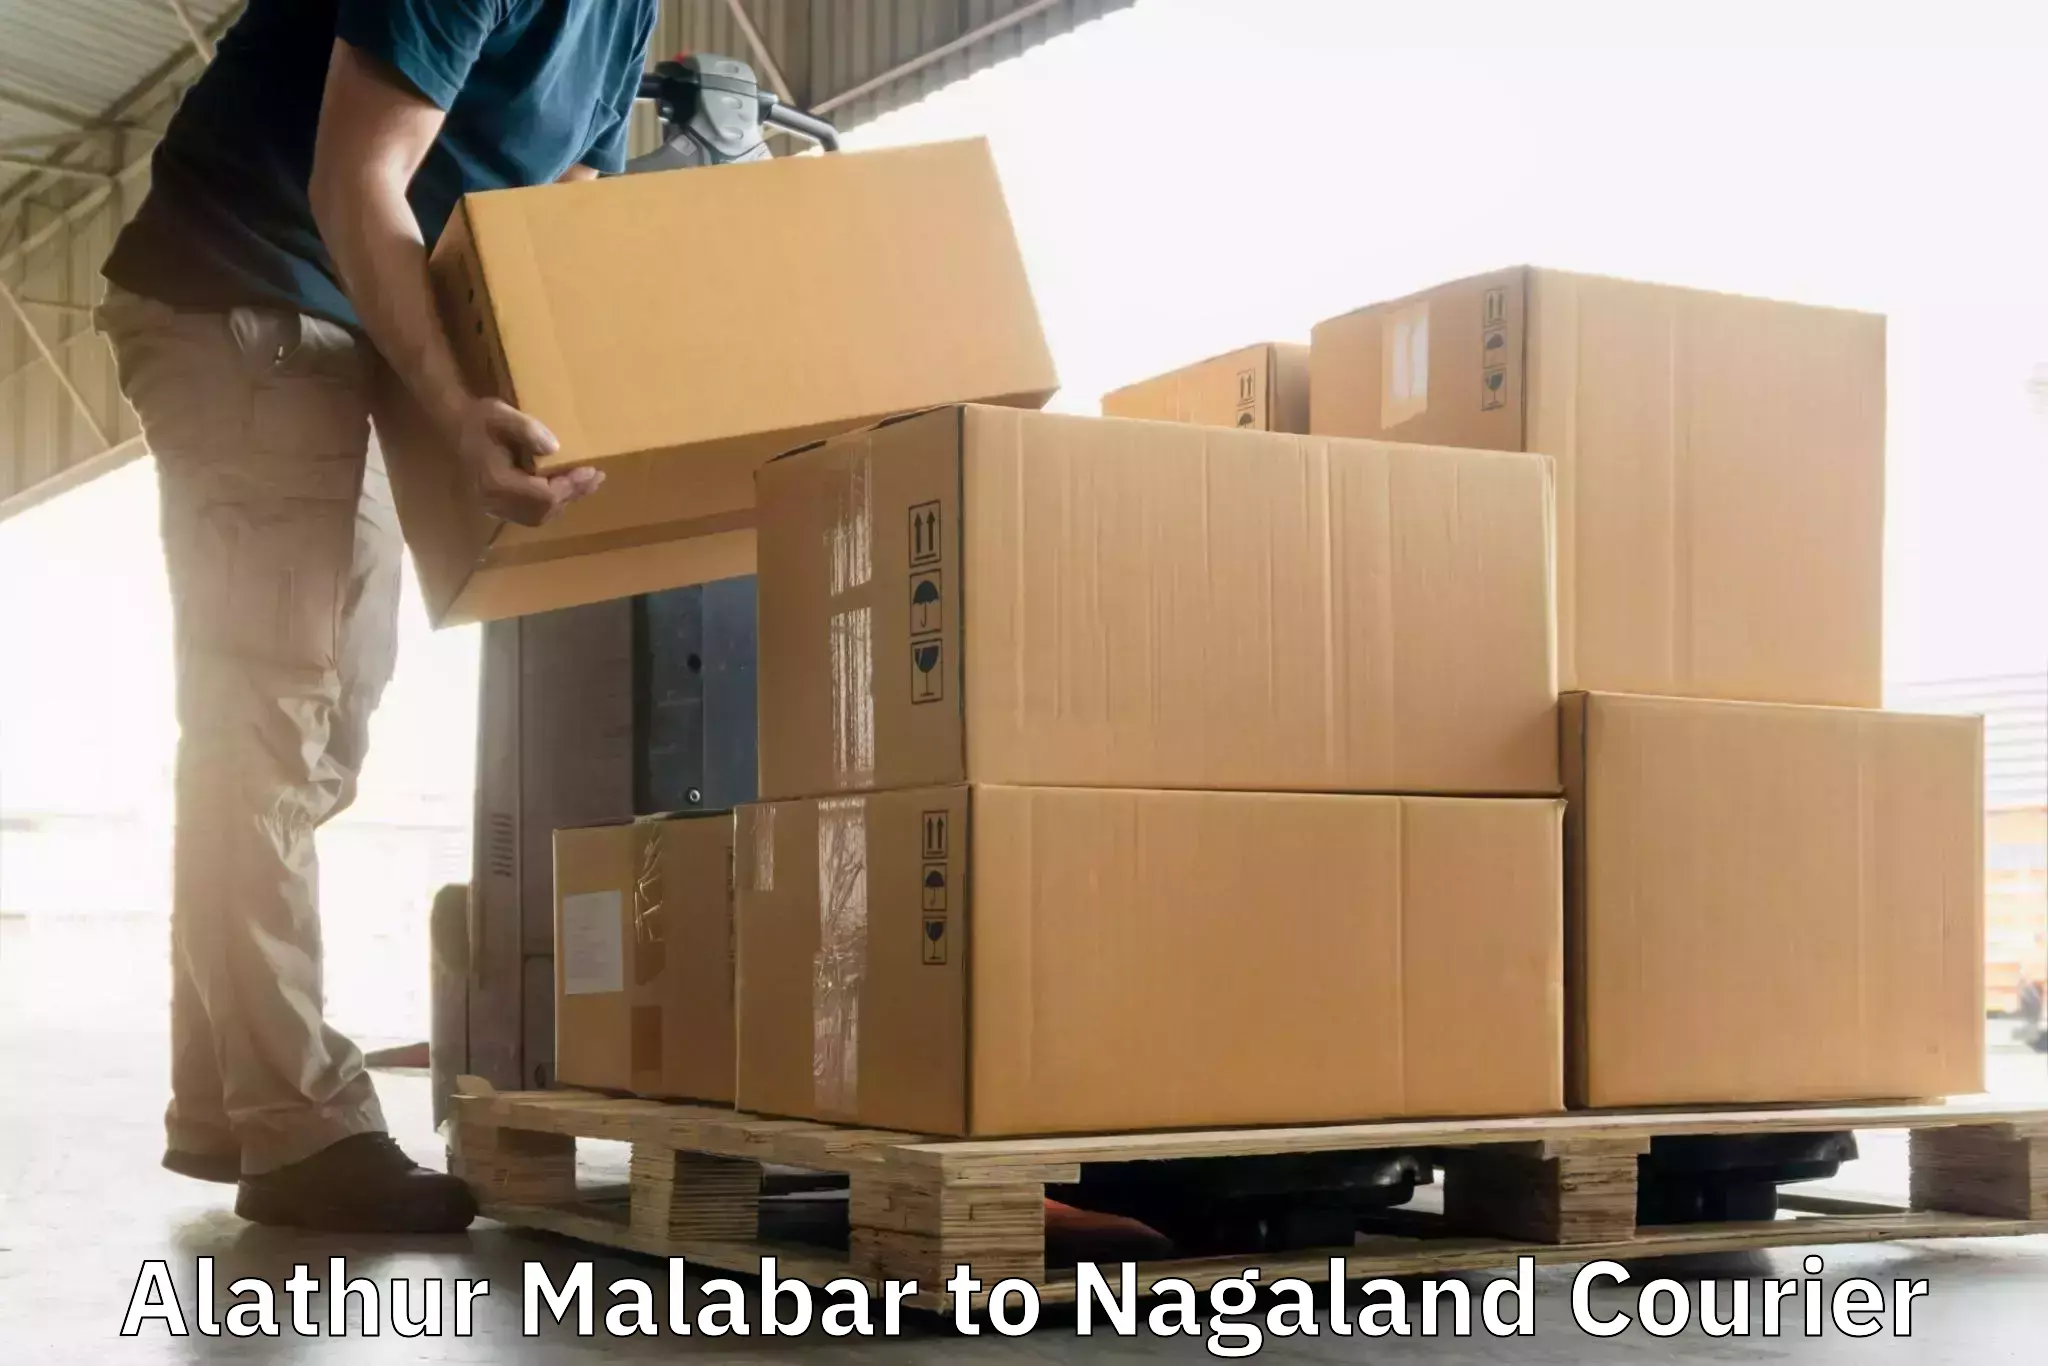 Modern courier technology Alathur Malabar to Nagaland